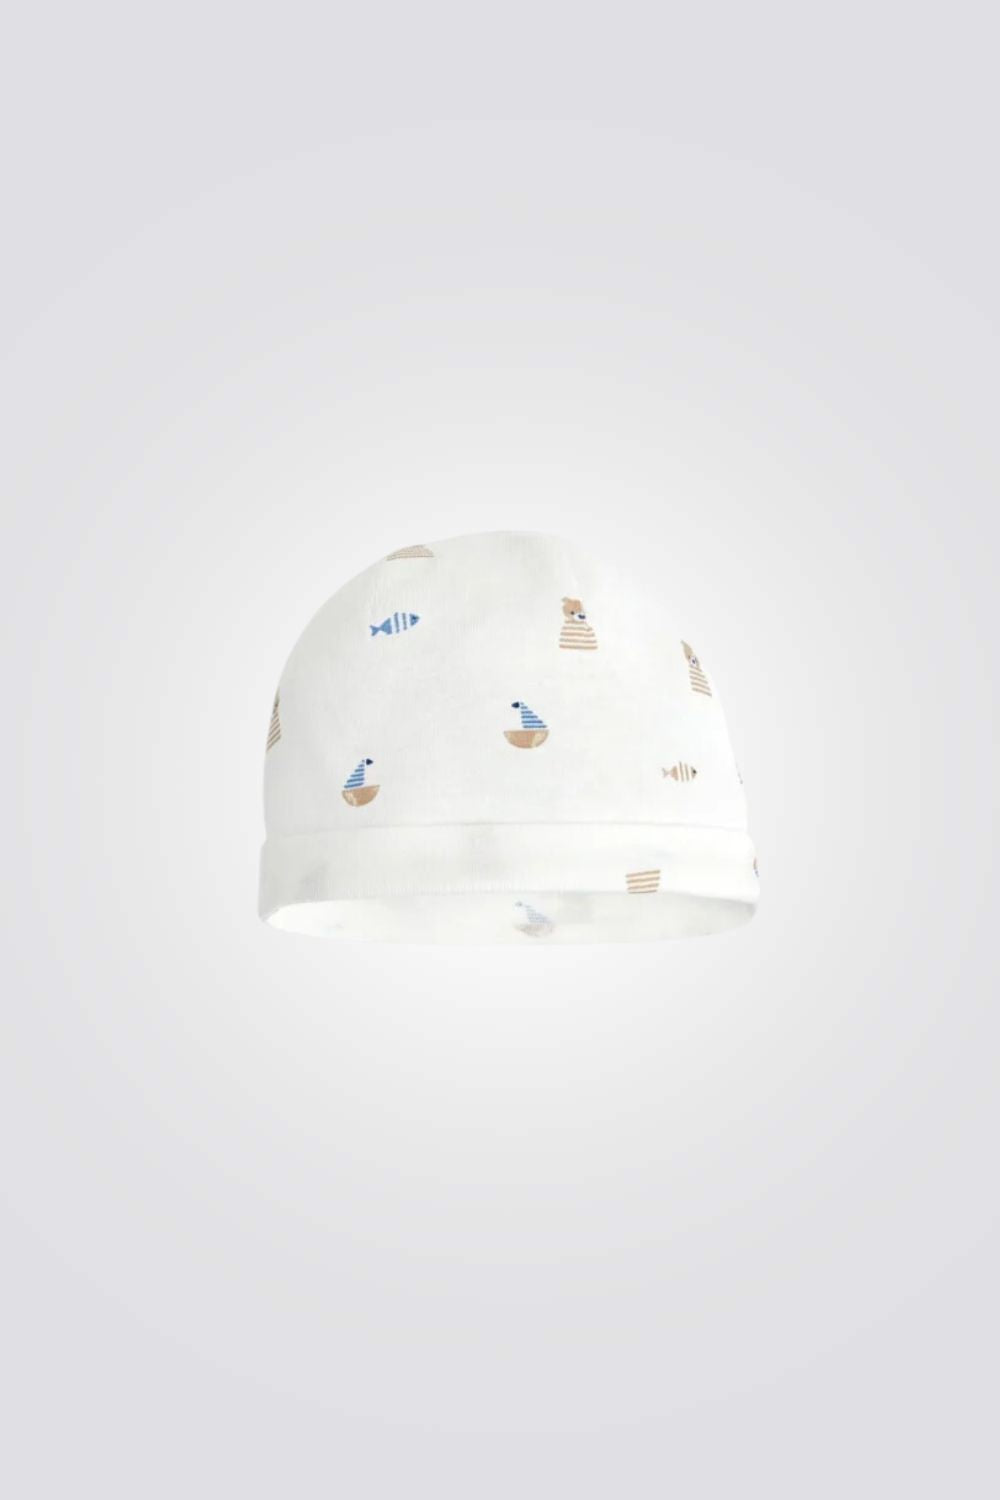 כובע לתינוקות בצבע לבן עם הדפס חיות